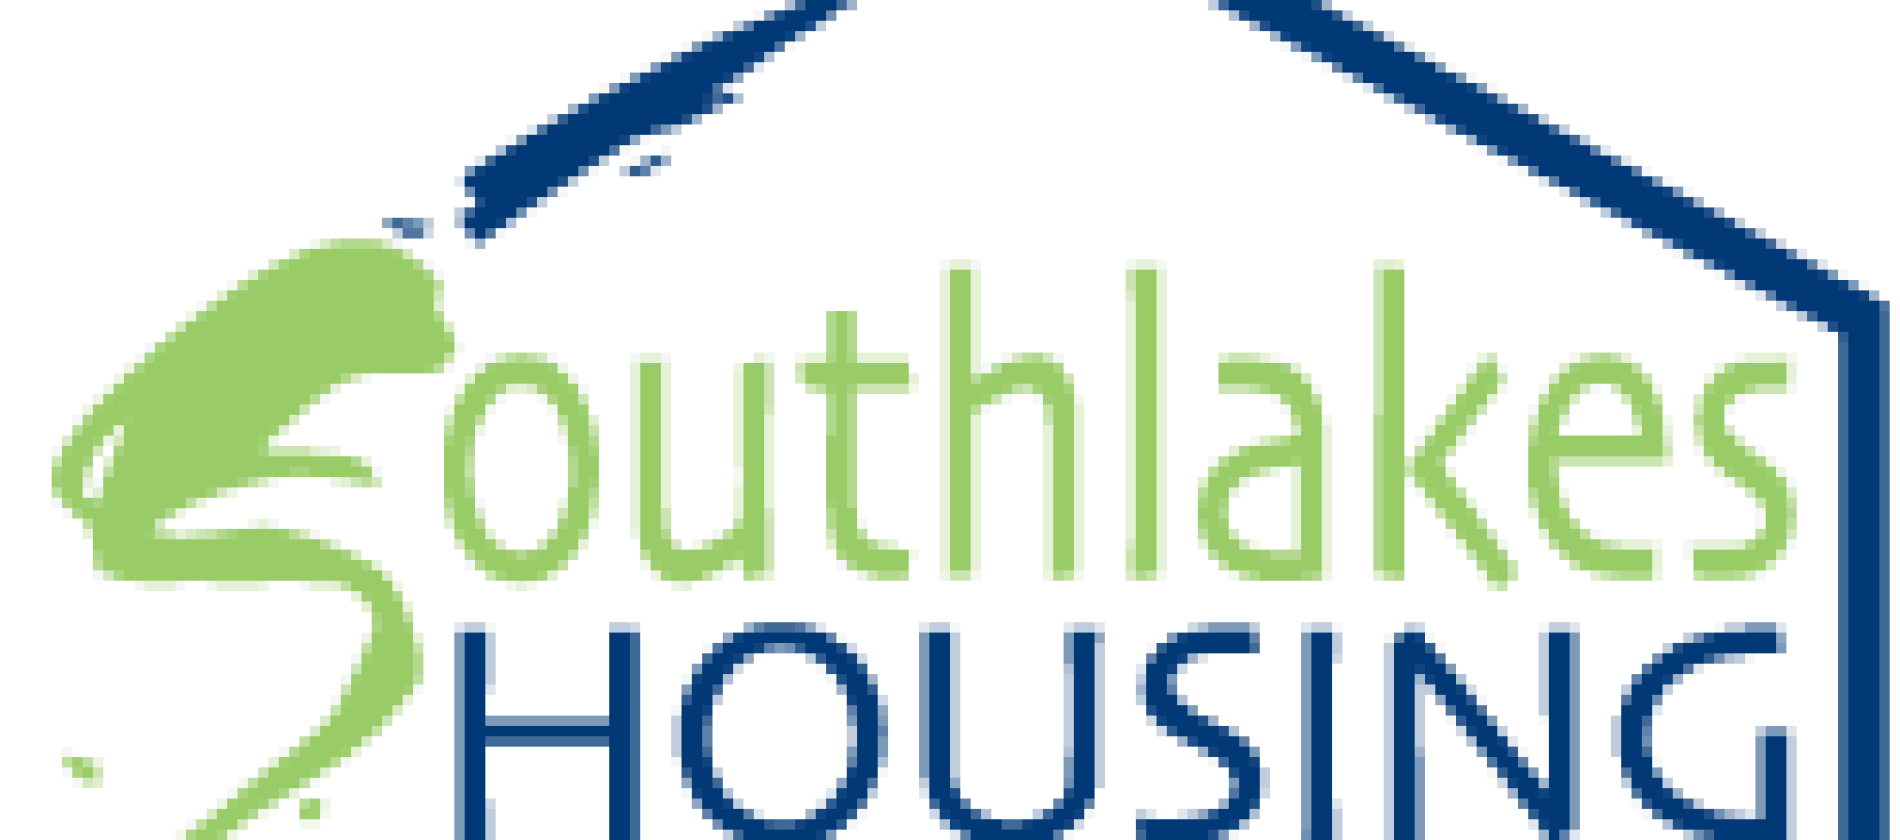 south-lakes-housing-logo